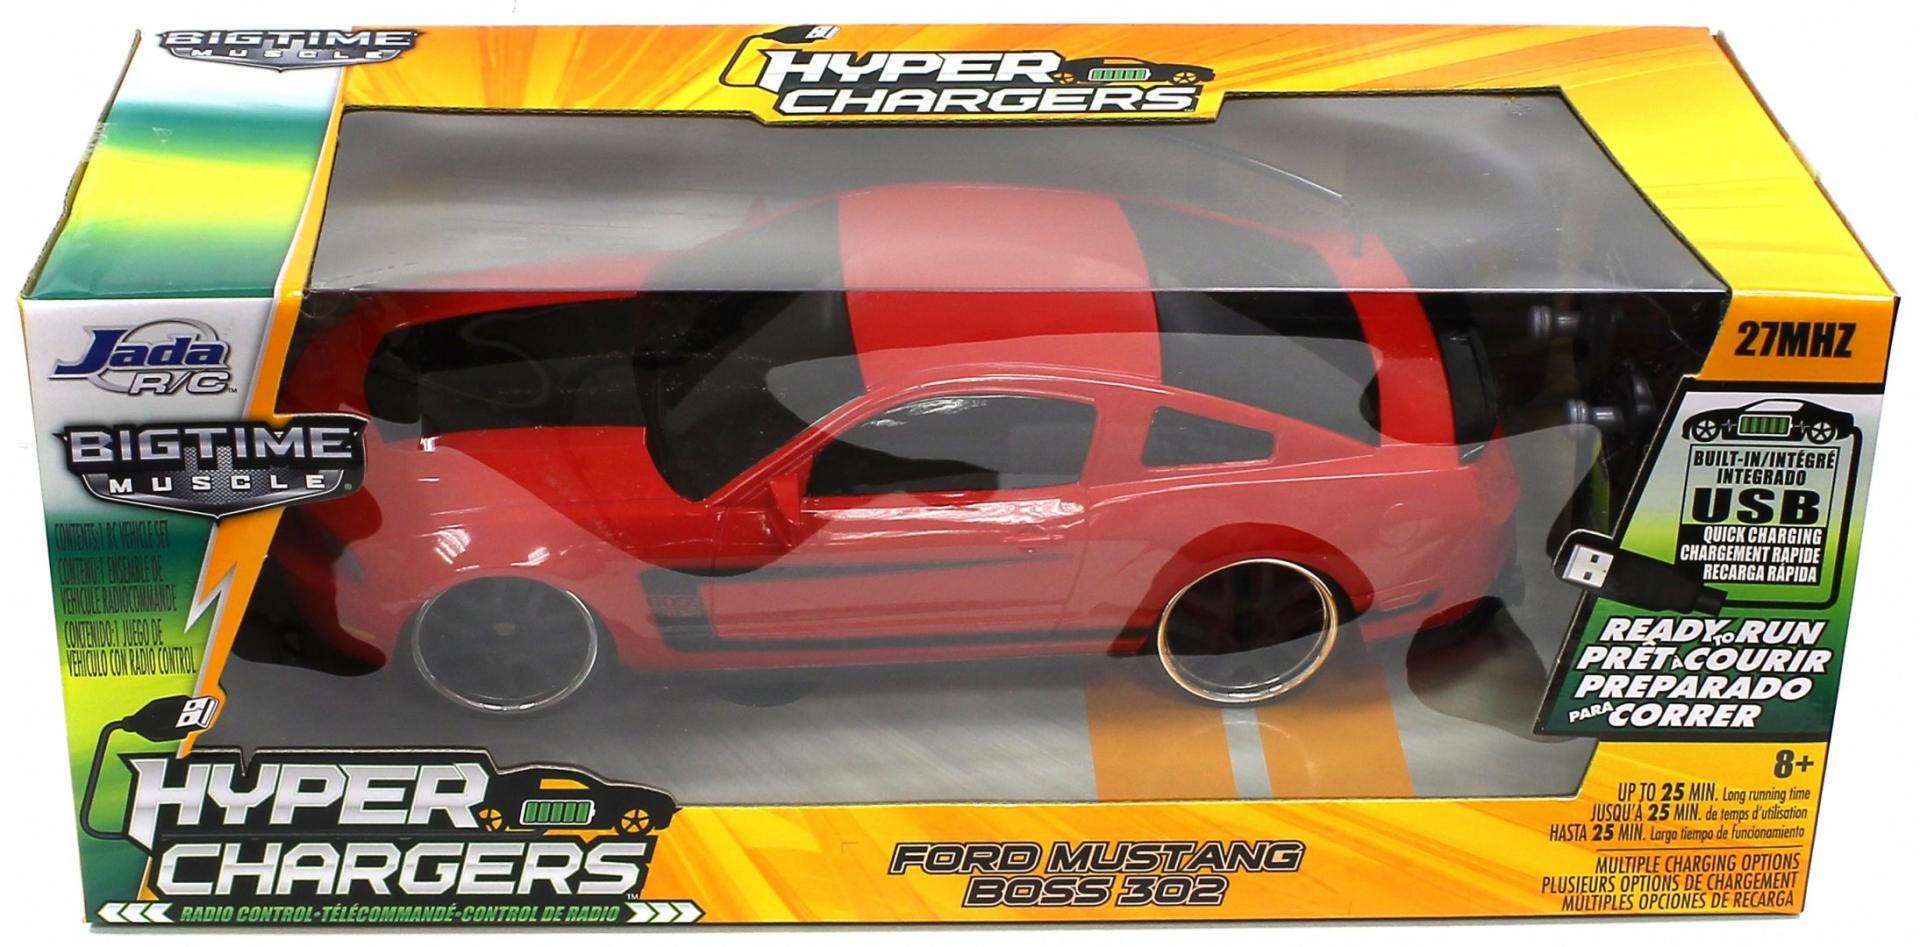 Иллюстрация 1 из 2 для Машина "2012 Ford Mustang Boss 302", 1/16 (84210-2) | Лабиринт - игрушки. Источник: Лабиринт